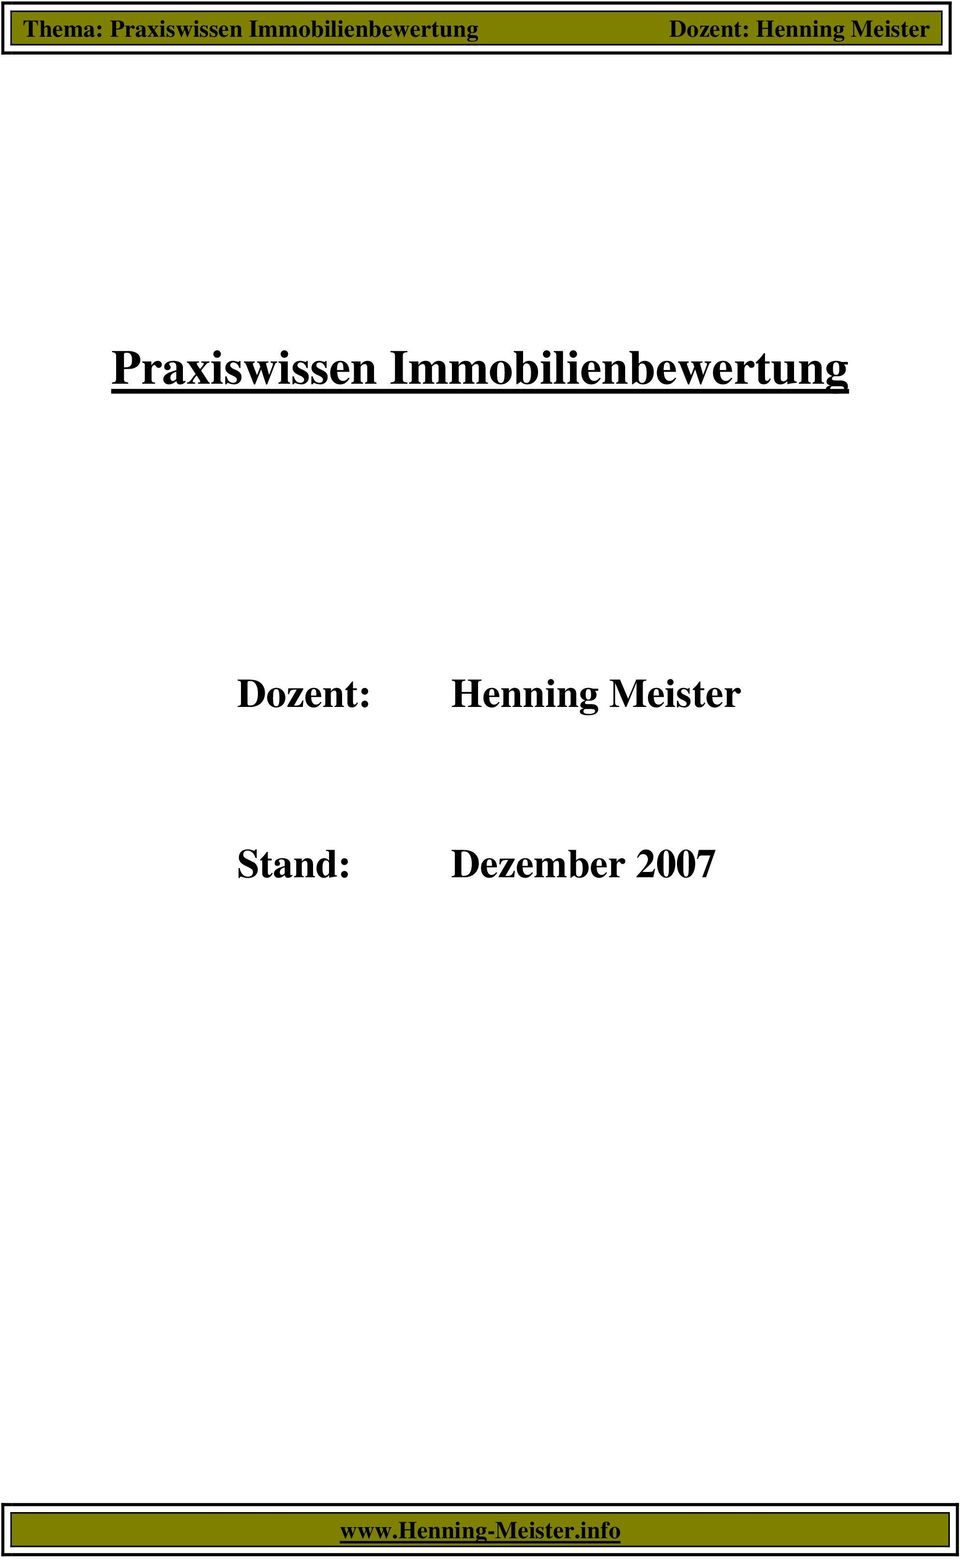 Dozent: Henning